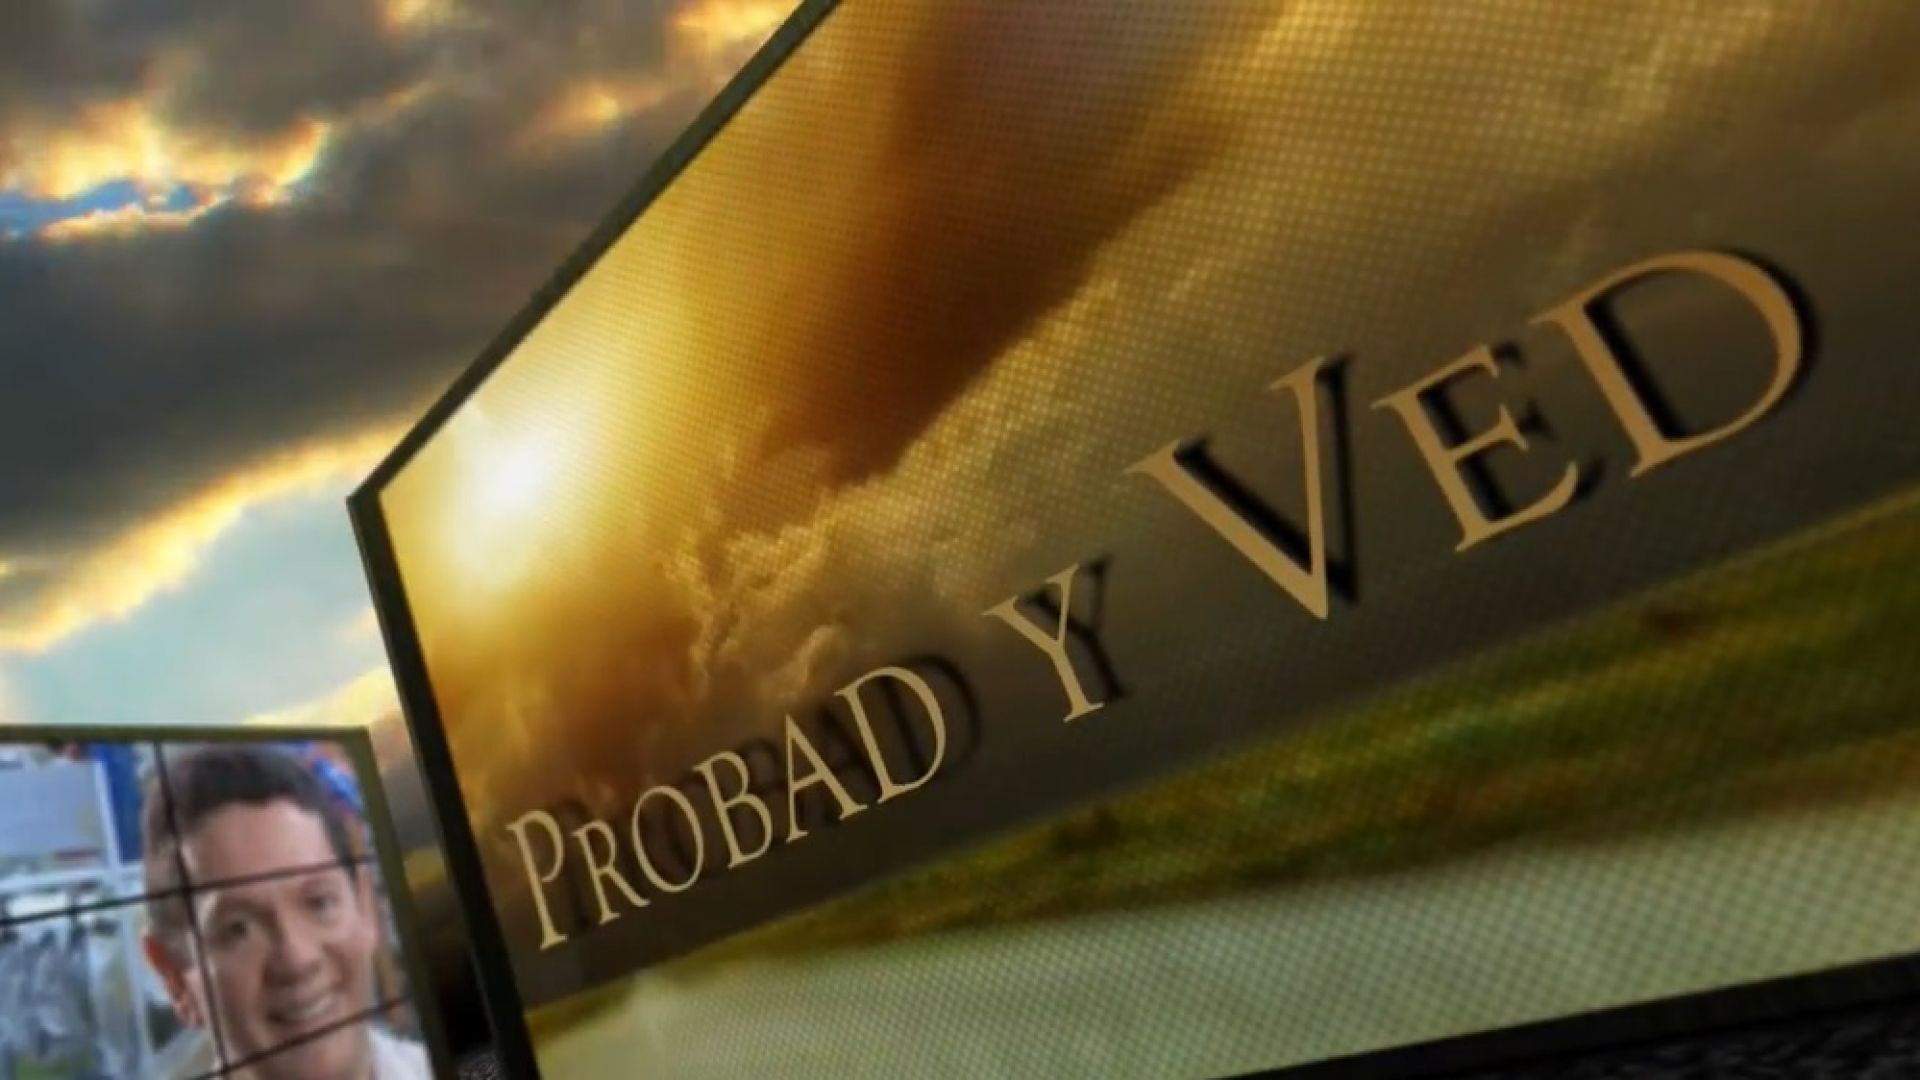 Probad y Ved 2013 -  Venciendo los desafios - 31/Ago